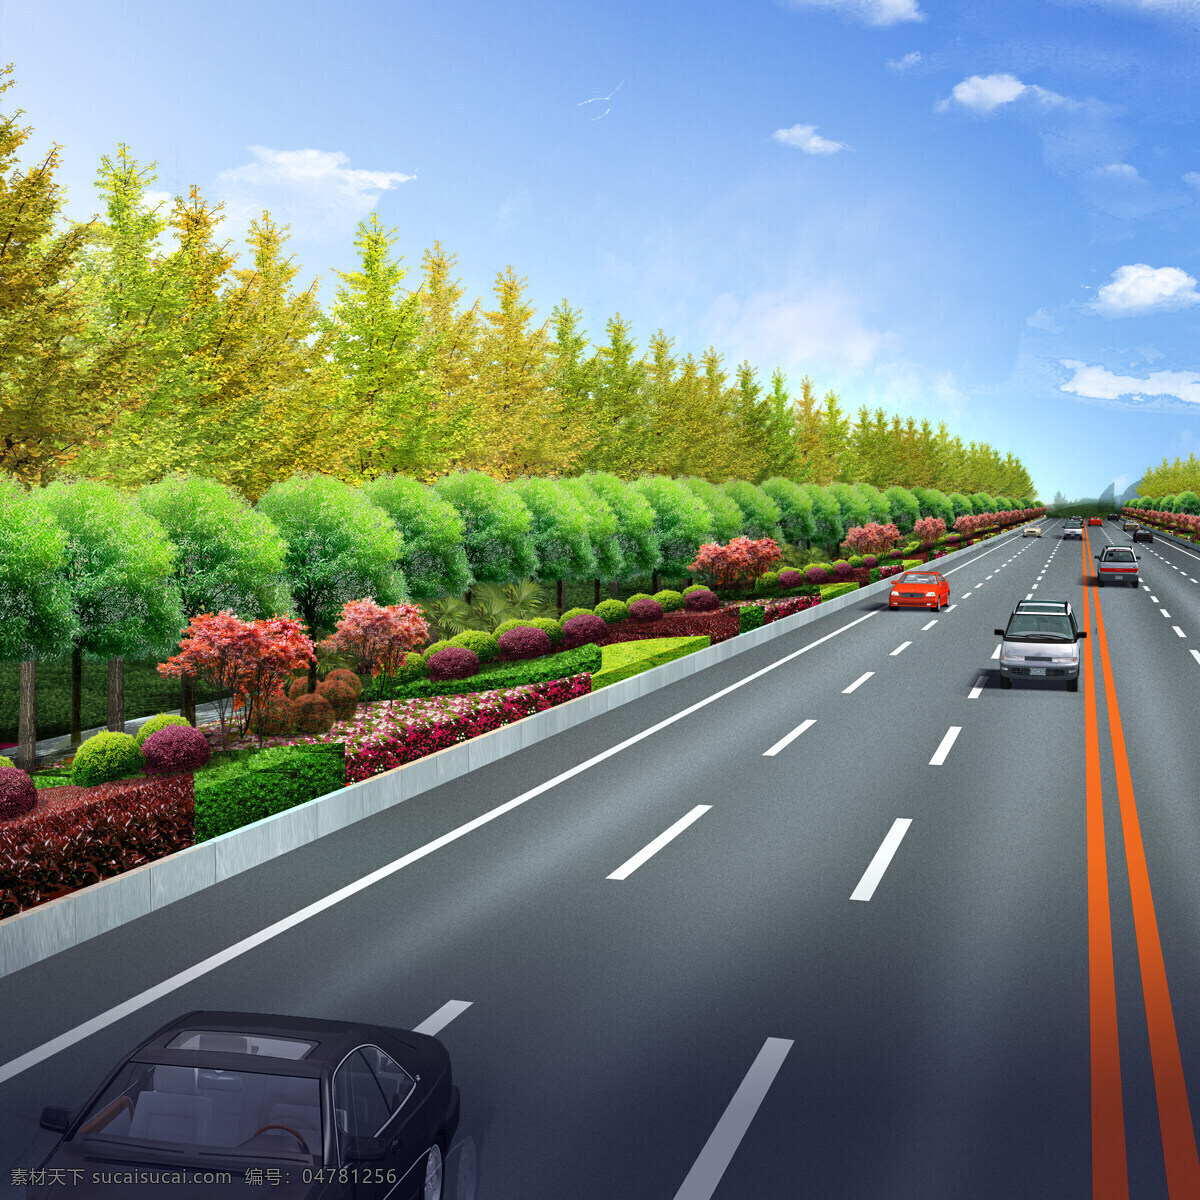 环境设计 景观设计 汽车 树木 市政 道路 效果图 设计素材 模板下载 城市主干道 市政道路建设 公路绿化 家居装饰素材